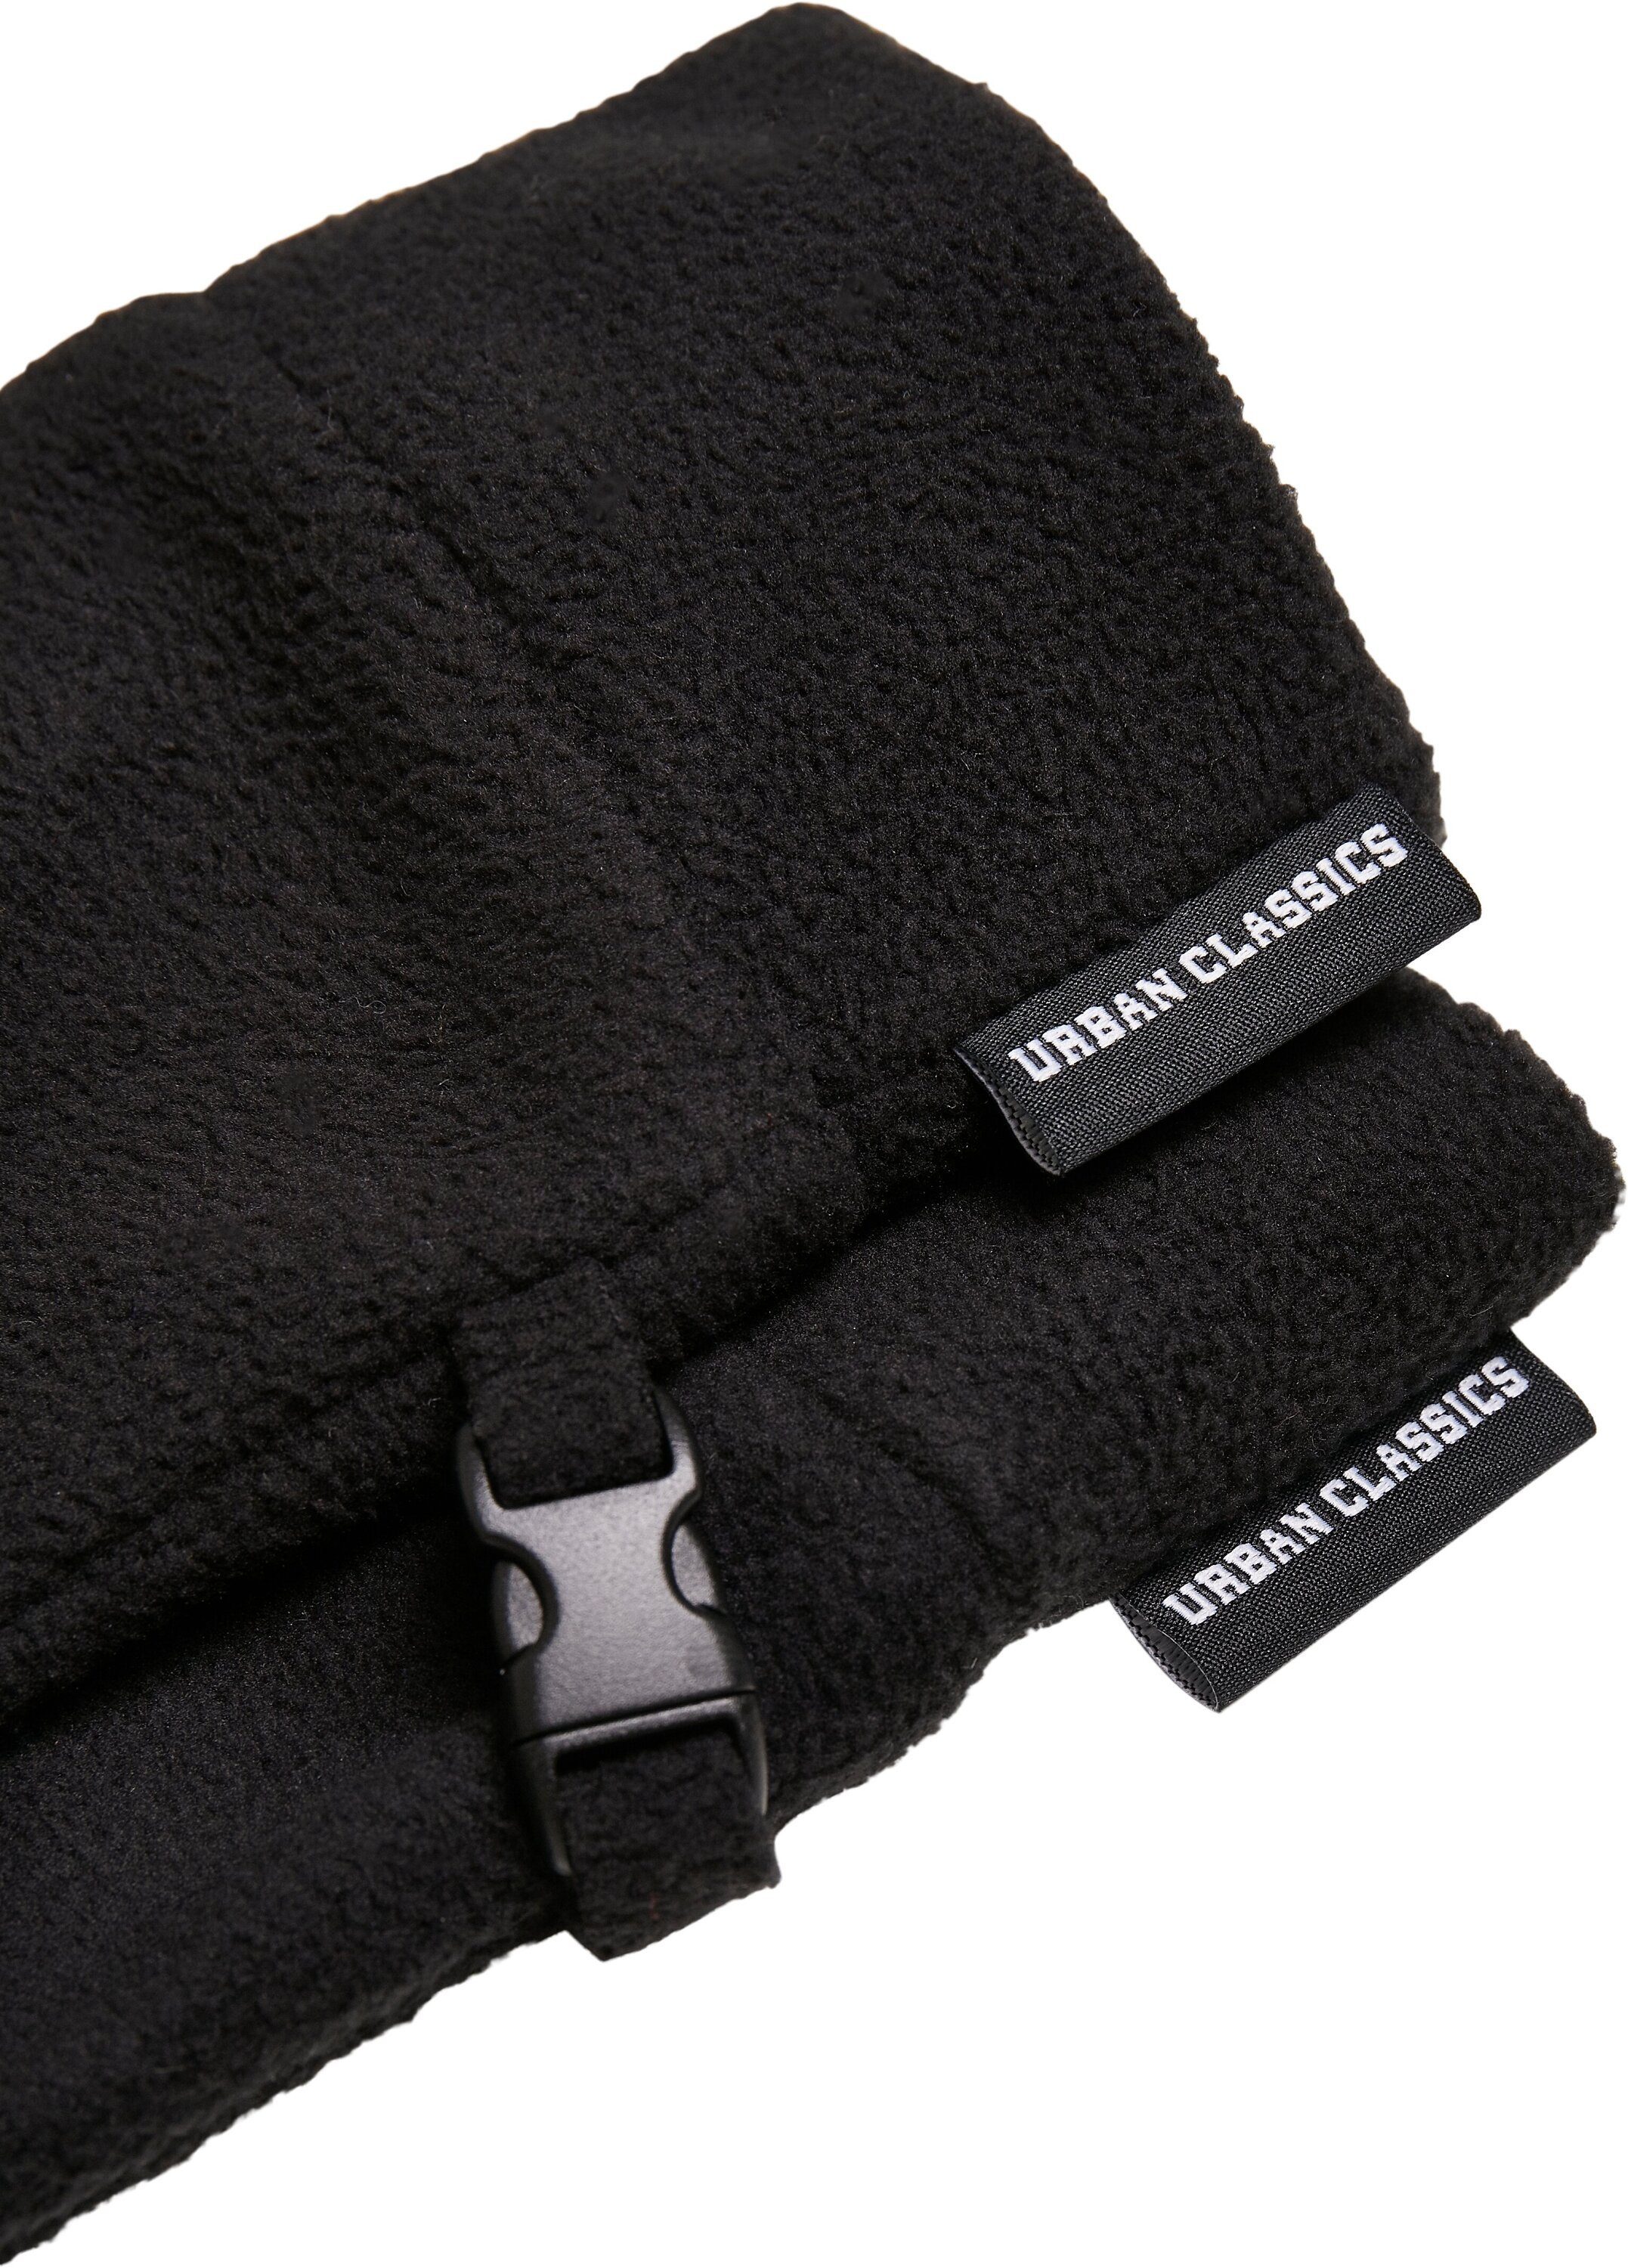 URBAN Fleece CLASSICS Winter Baumwollhandschuhe Set Accessoires